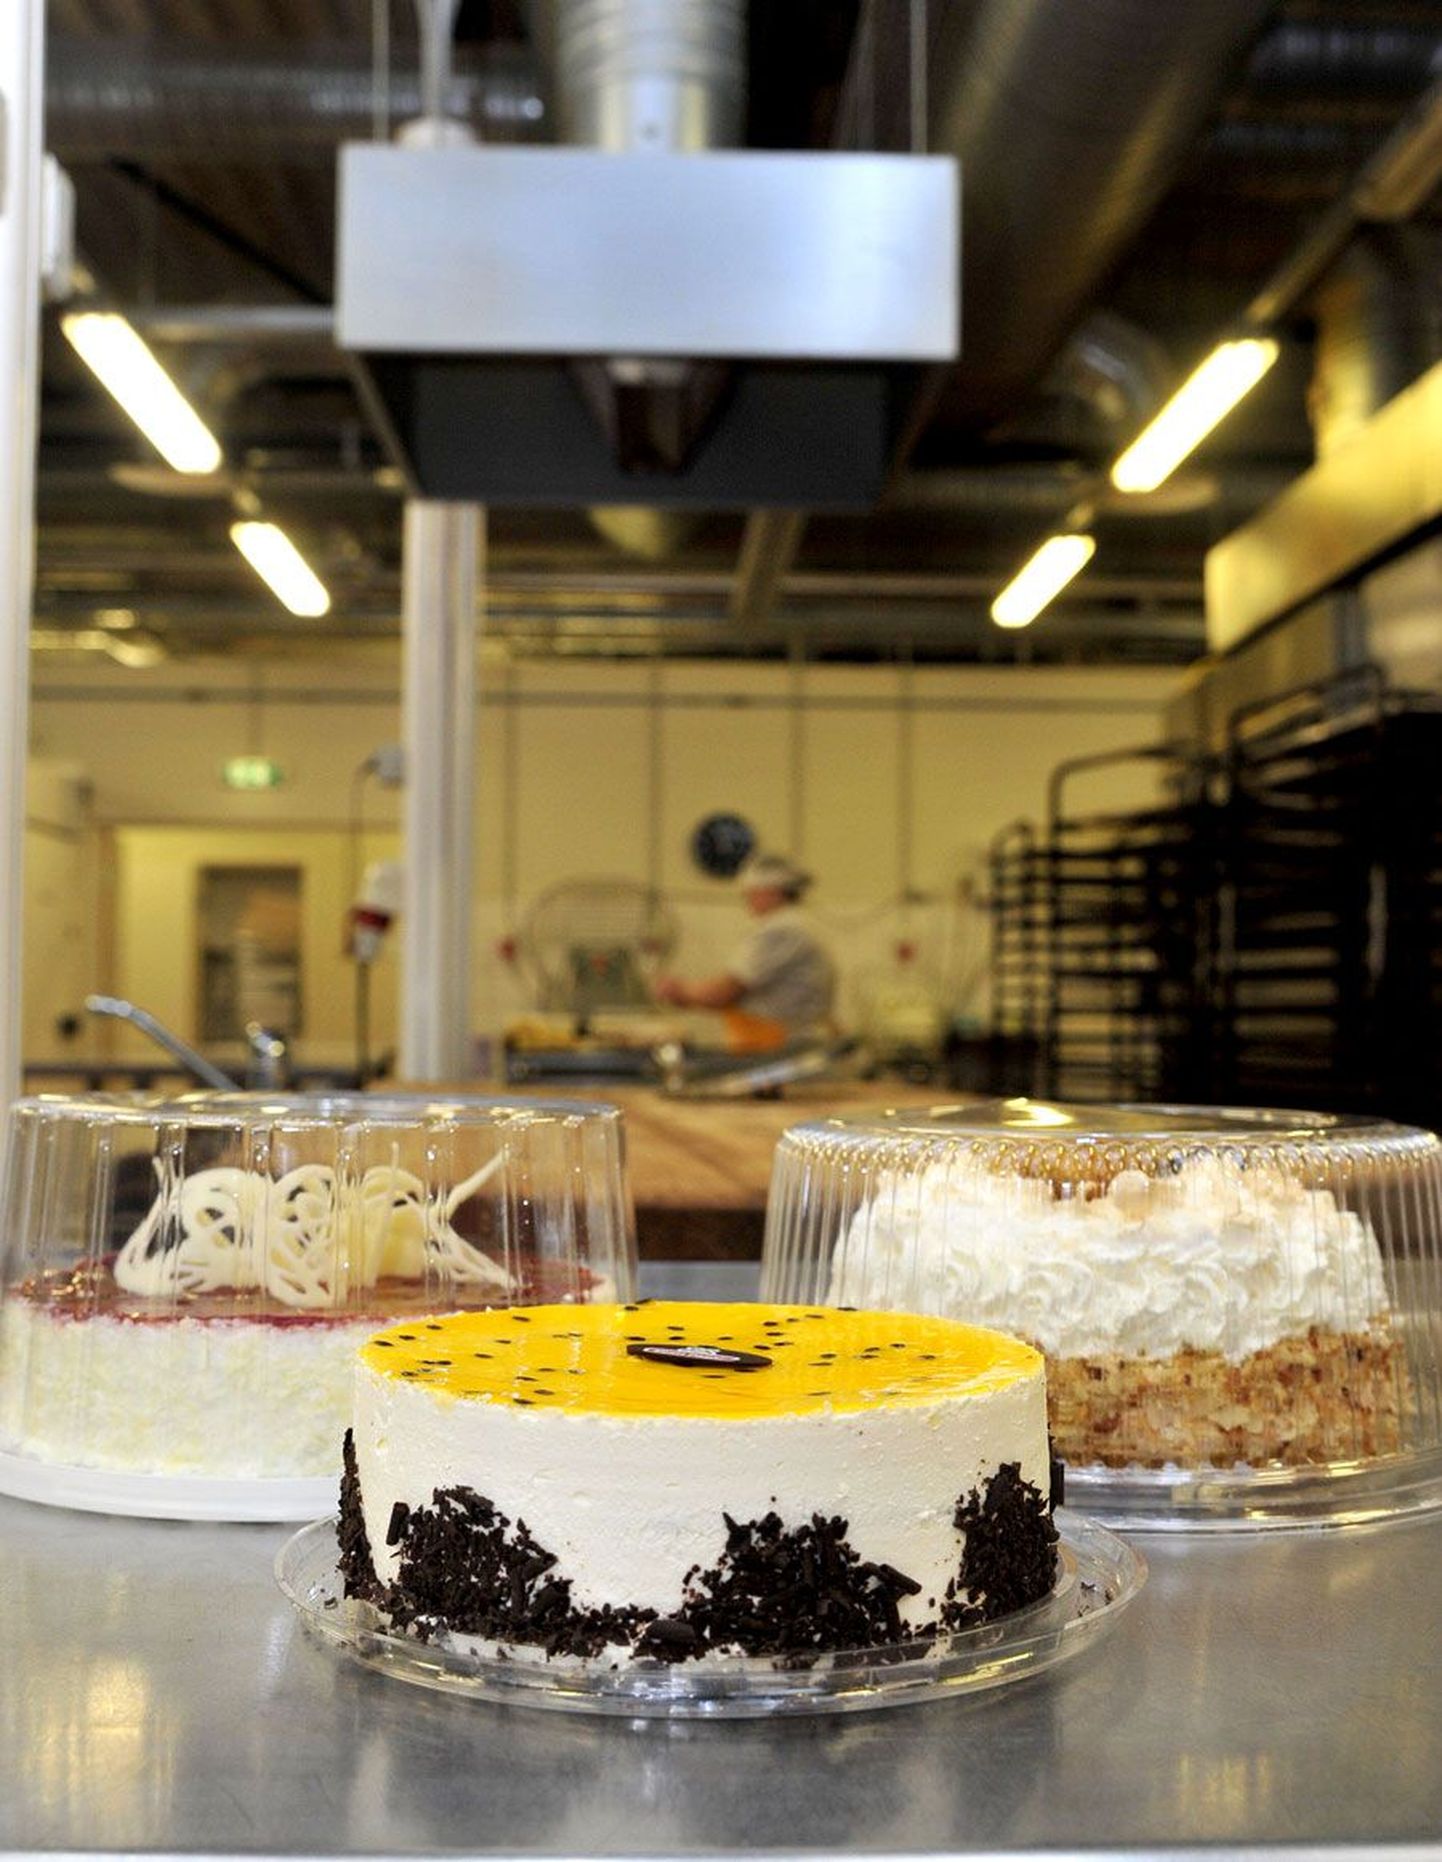 Eelmise aasta lõpul täielikult tortide tootmisele keskendunud Astri Tootmise tootevalikus on praegu veerandsada torti. Päevas valmistab ettevõte umbes tuhat torti.